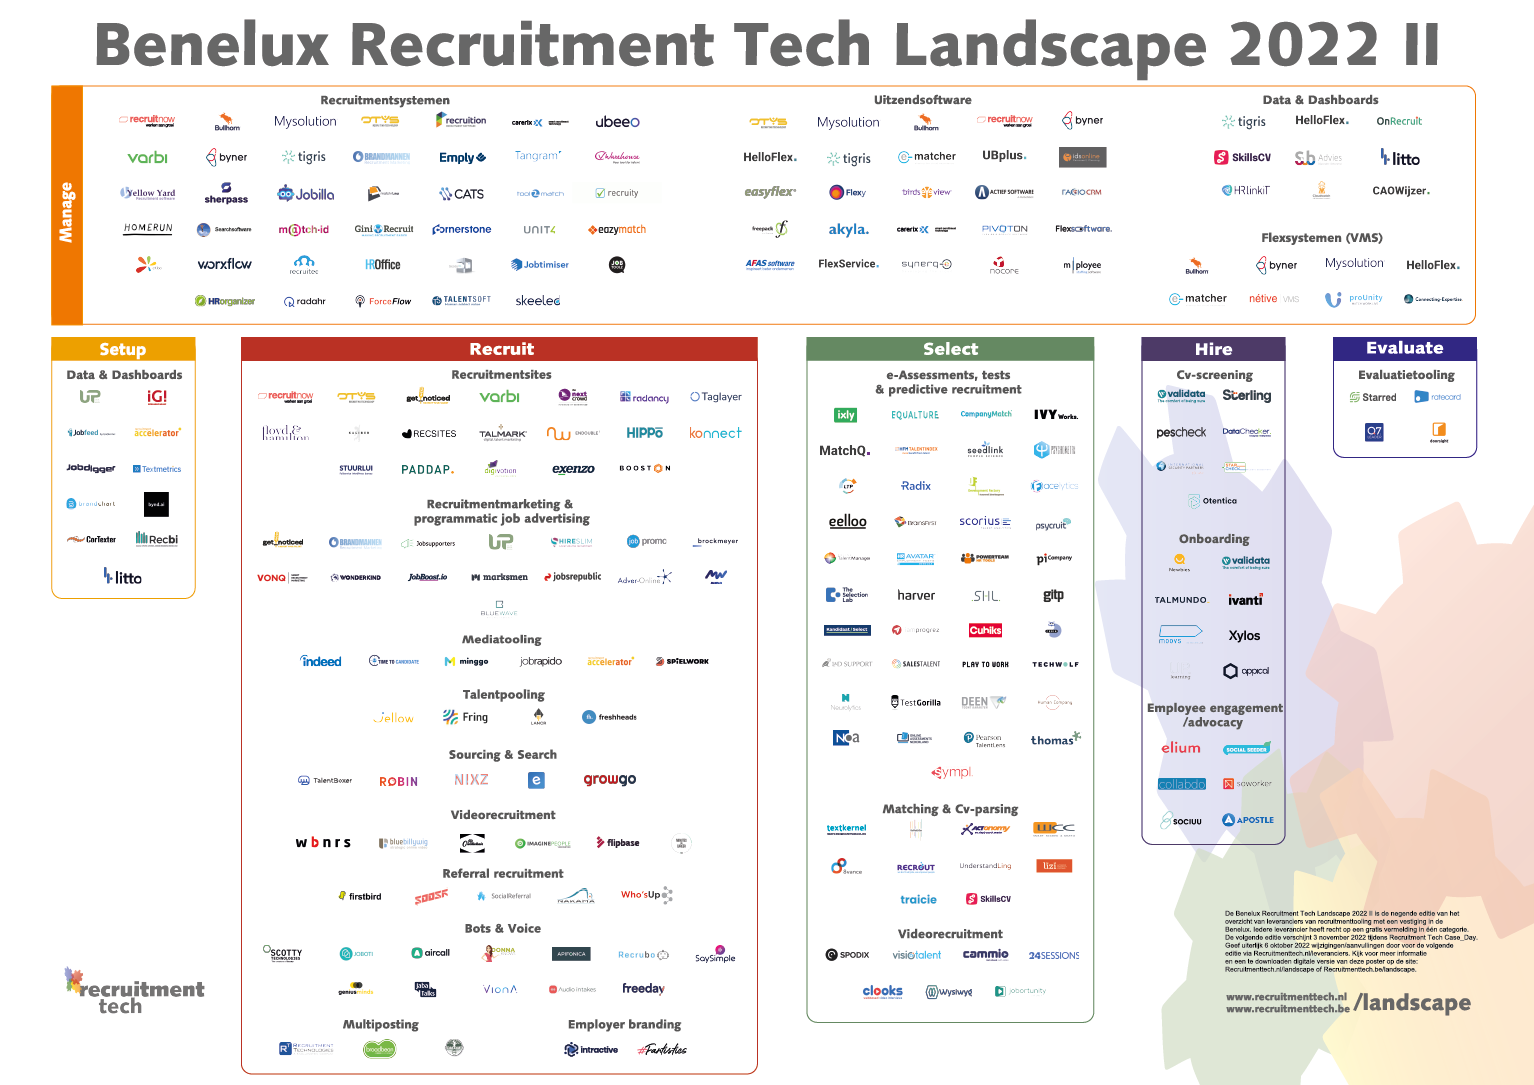 Recruitment Tech Landscape 2022 II - groot